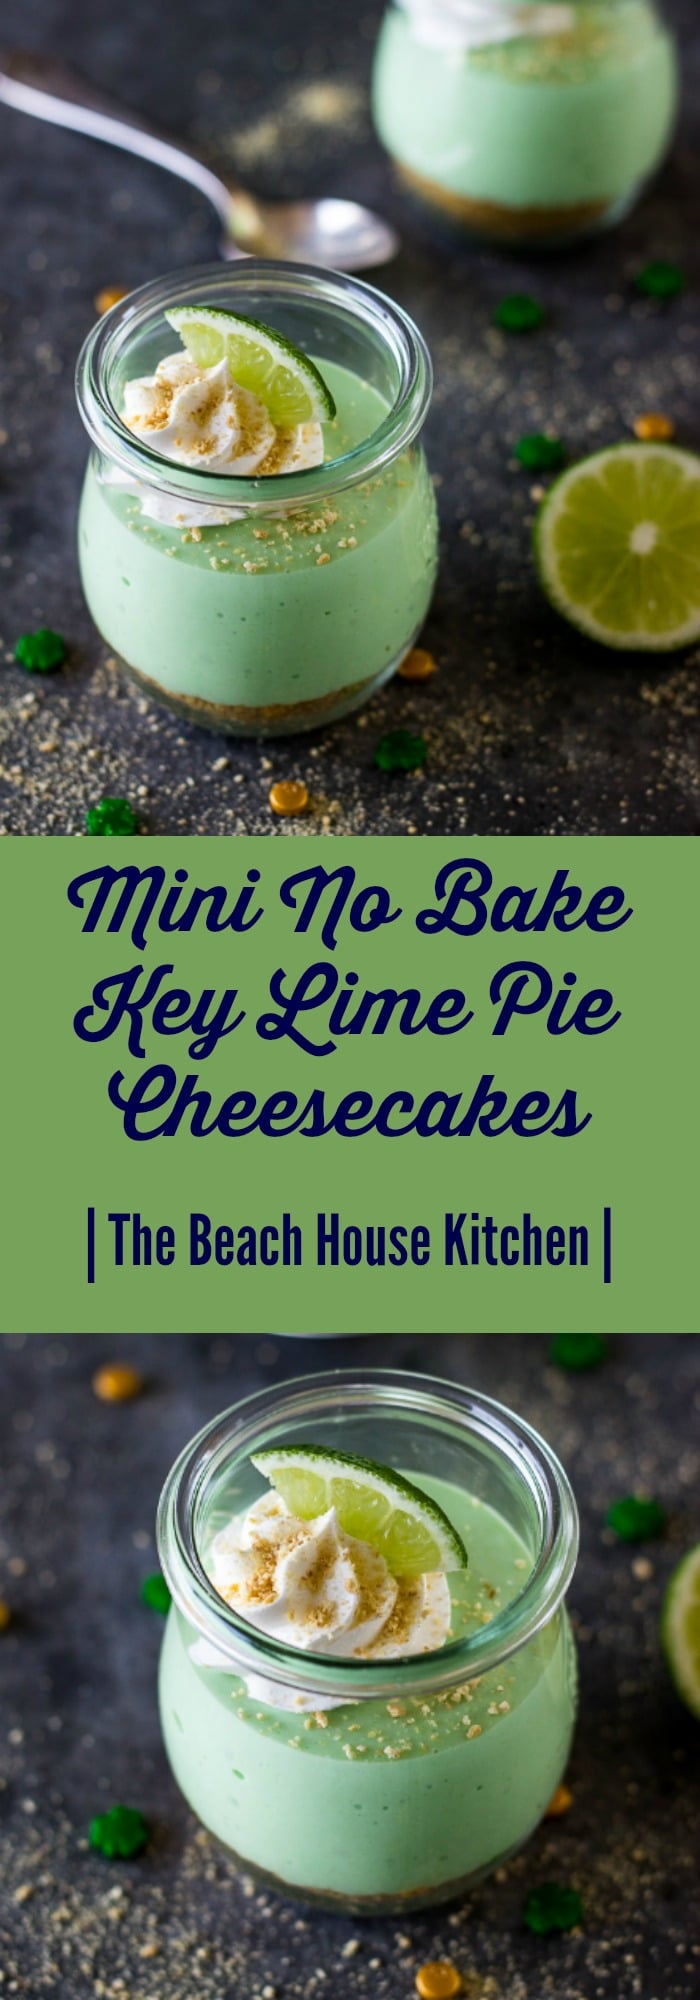 Mini No Bake Key Lime Pie Cheesecakes